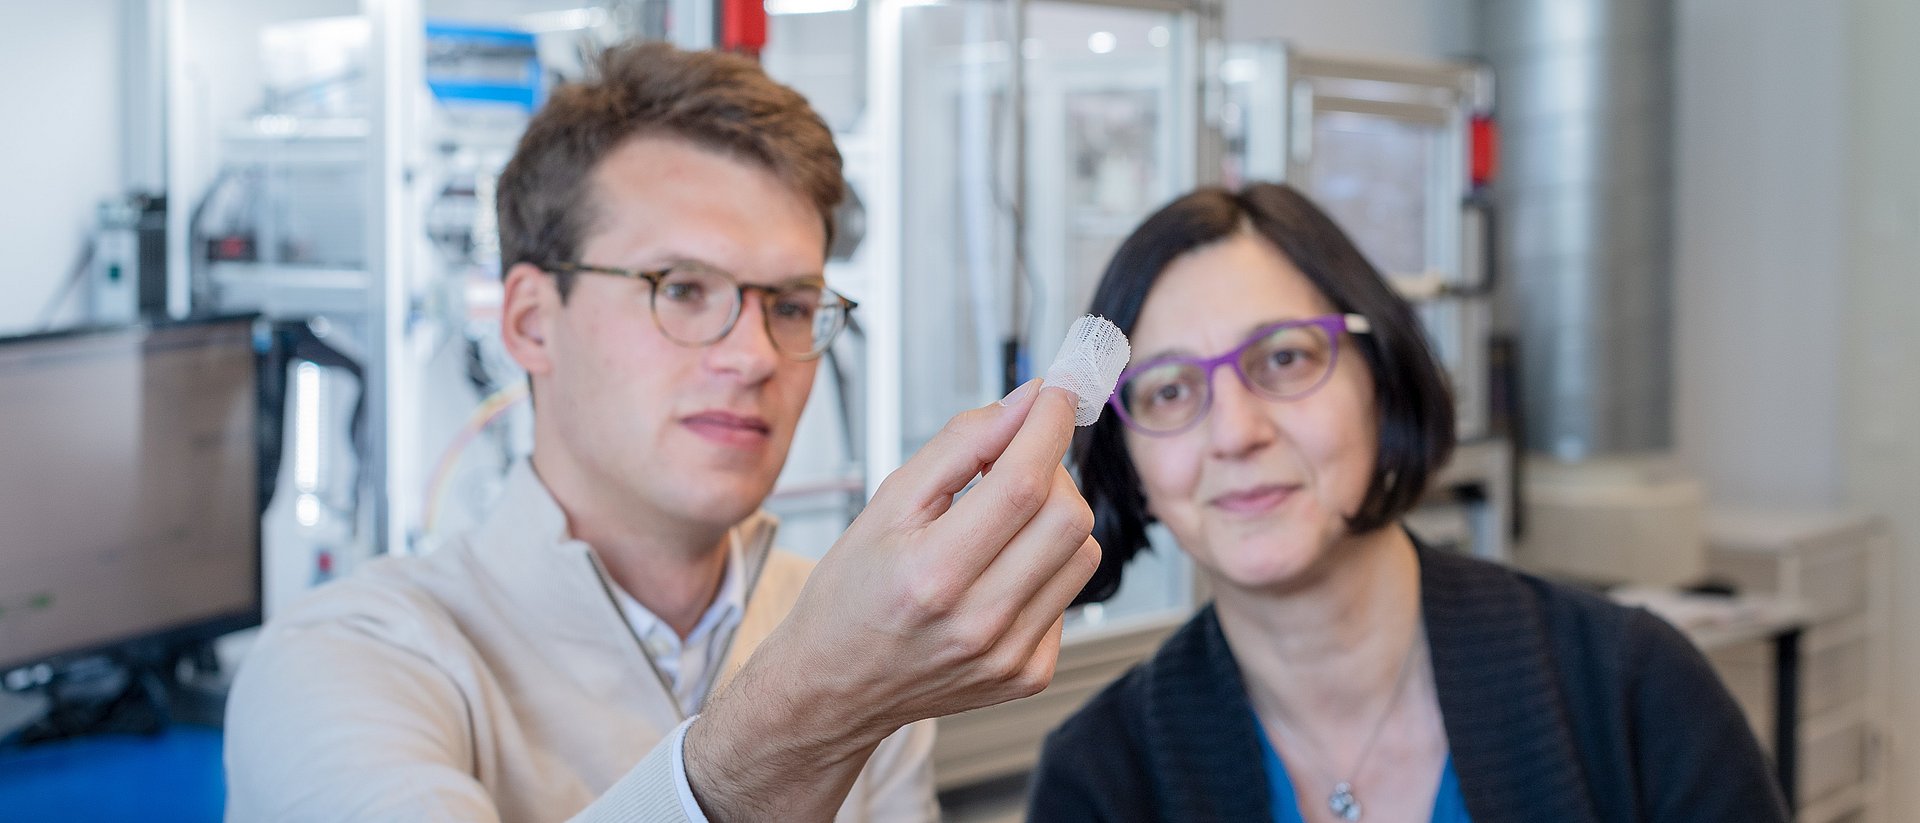 Petra Mela, Professorin für Medizintechnische Materialien und Implantate an der Technischen Universität München (TUM)und Doktorand Kilian Mueller, begutachten eine 3D gedruckte Herzklappe. 